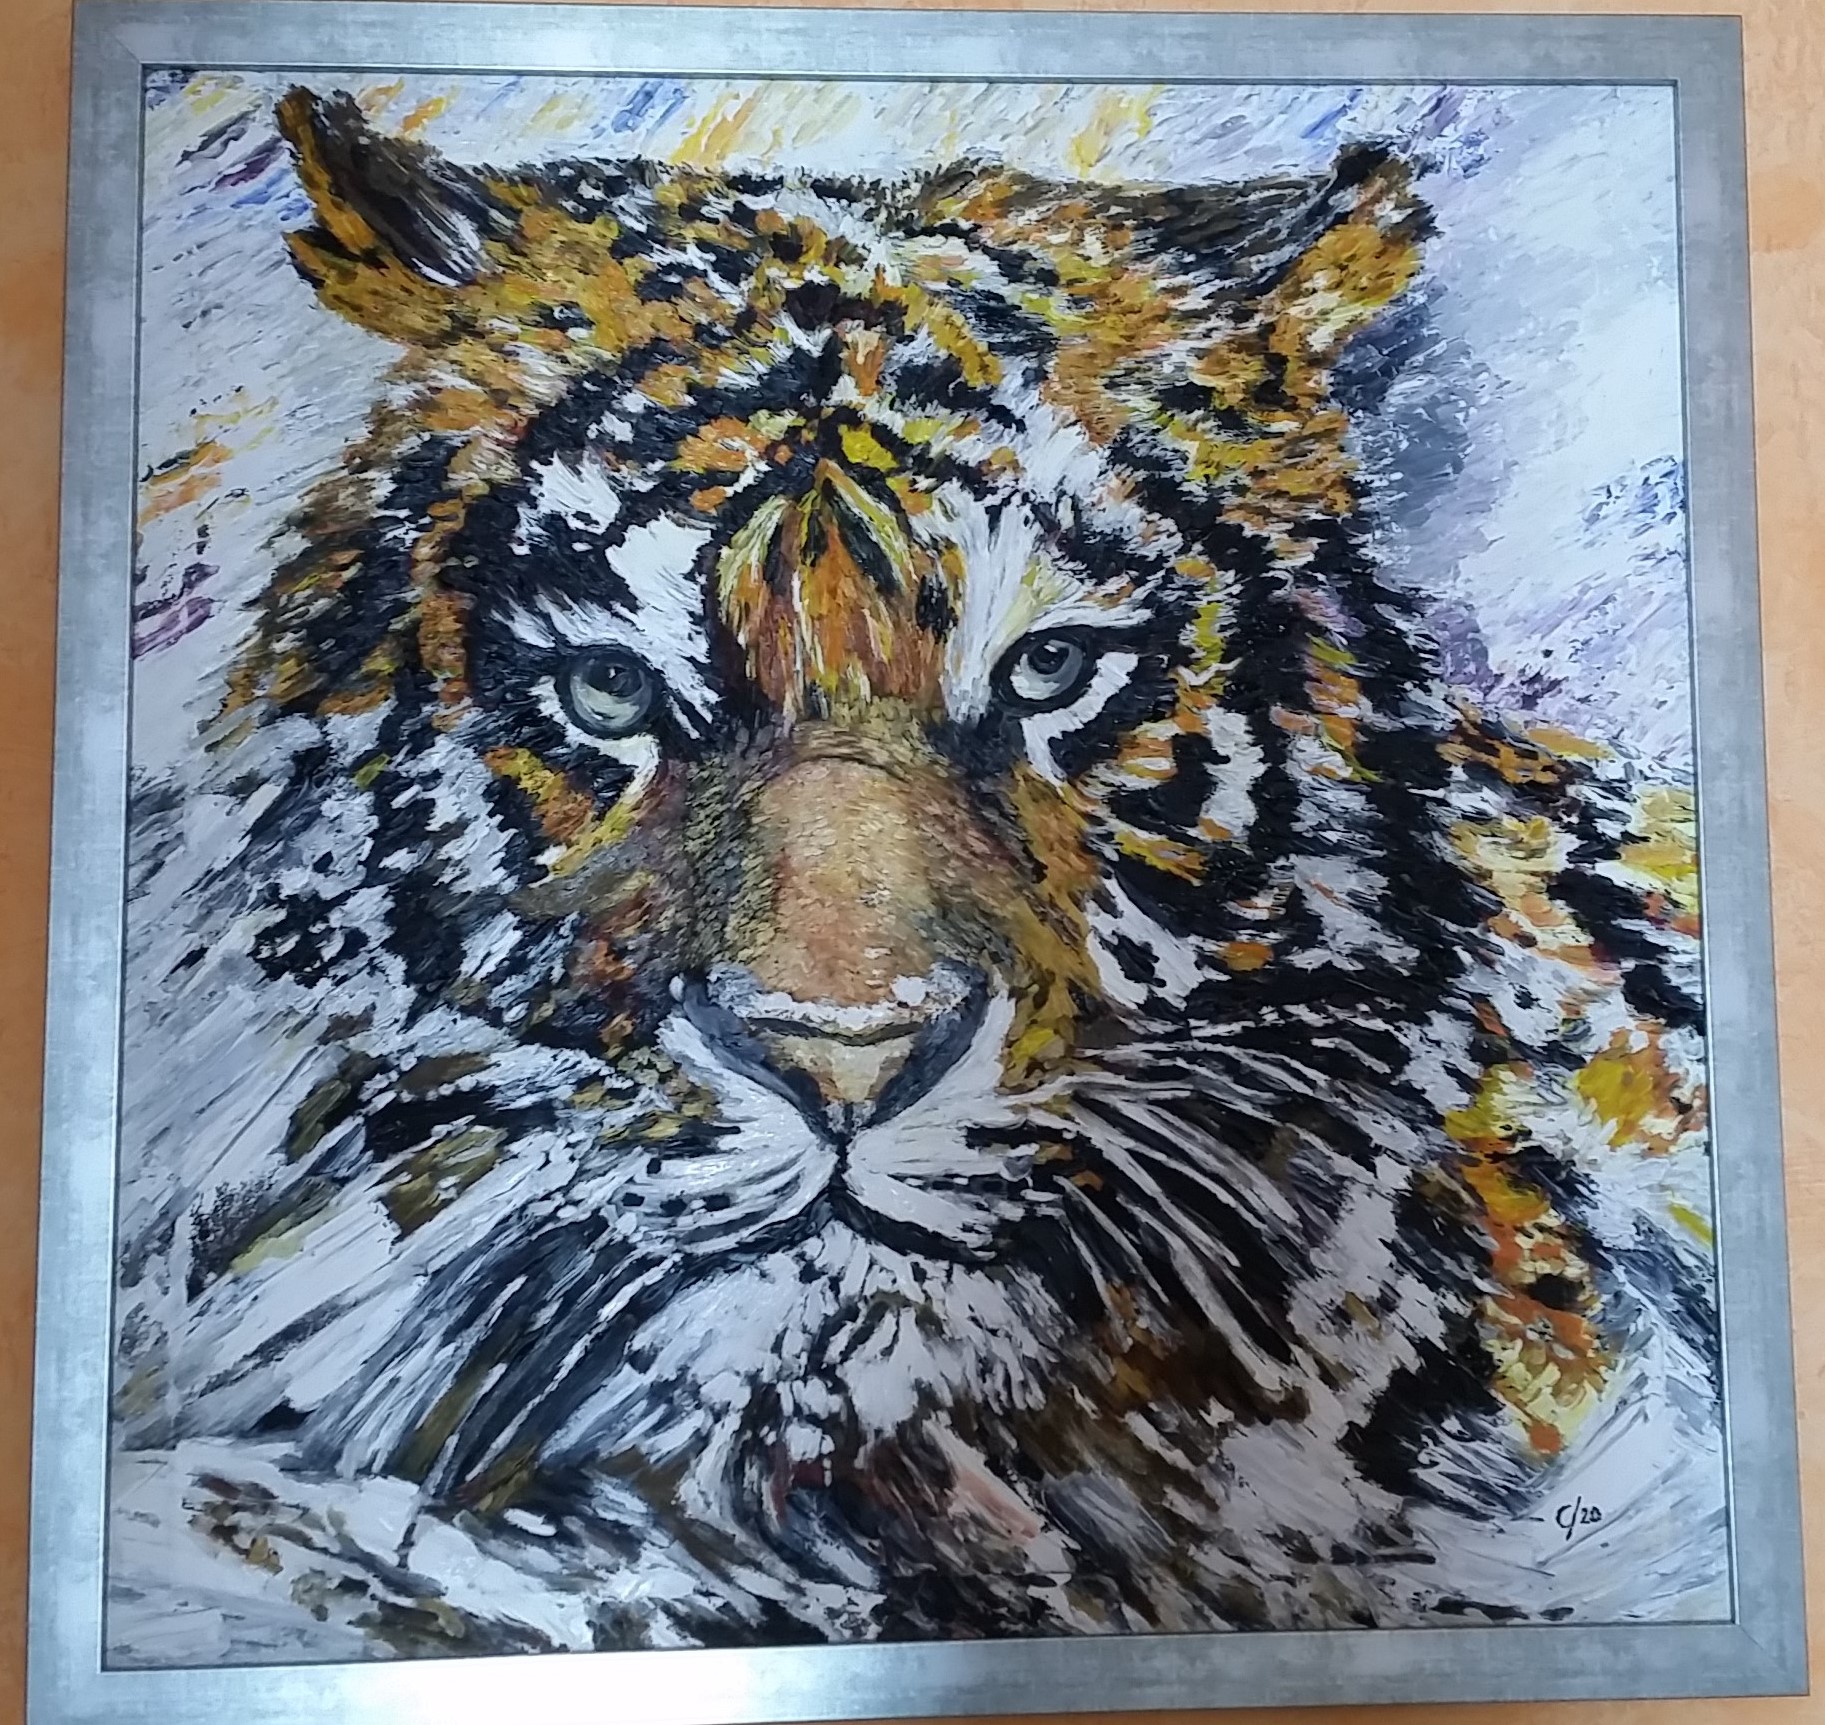 Sibirischer Tiger
100 x 100 cm, gerahmt, verkauft